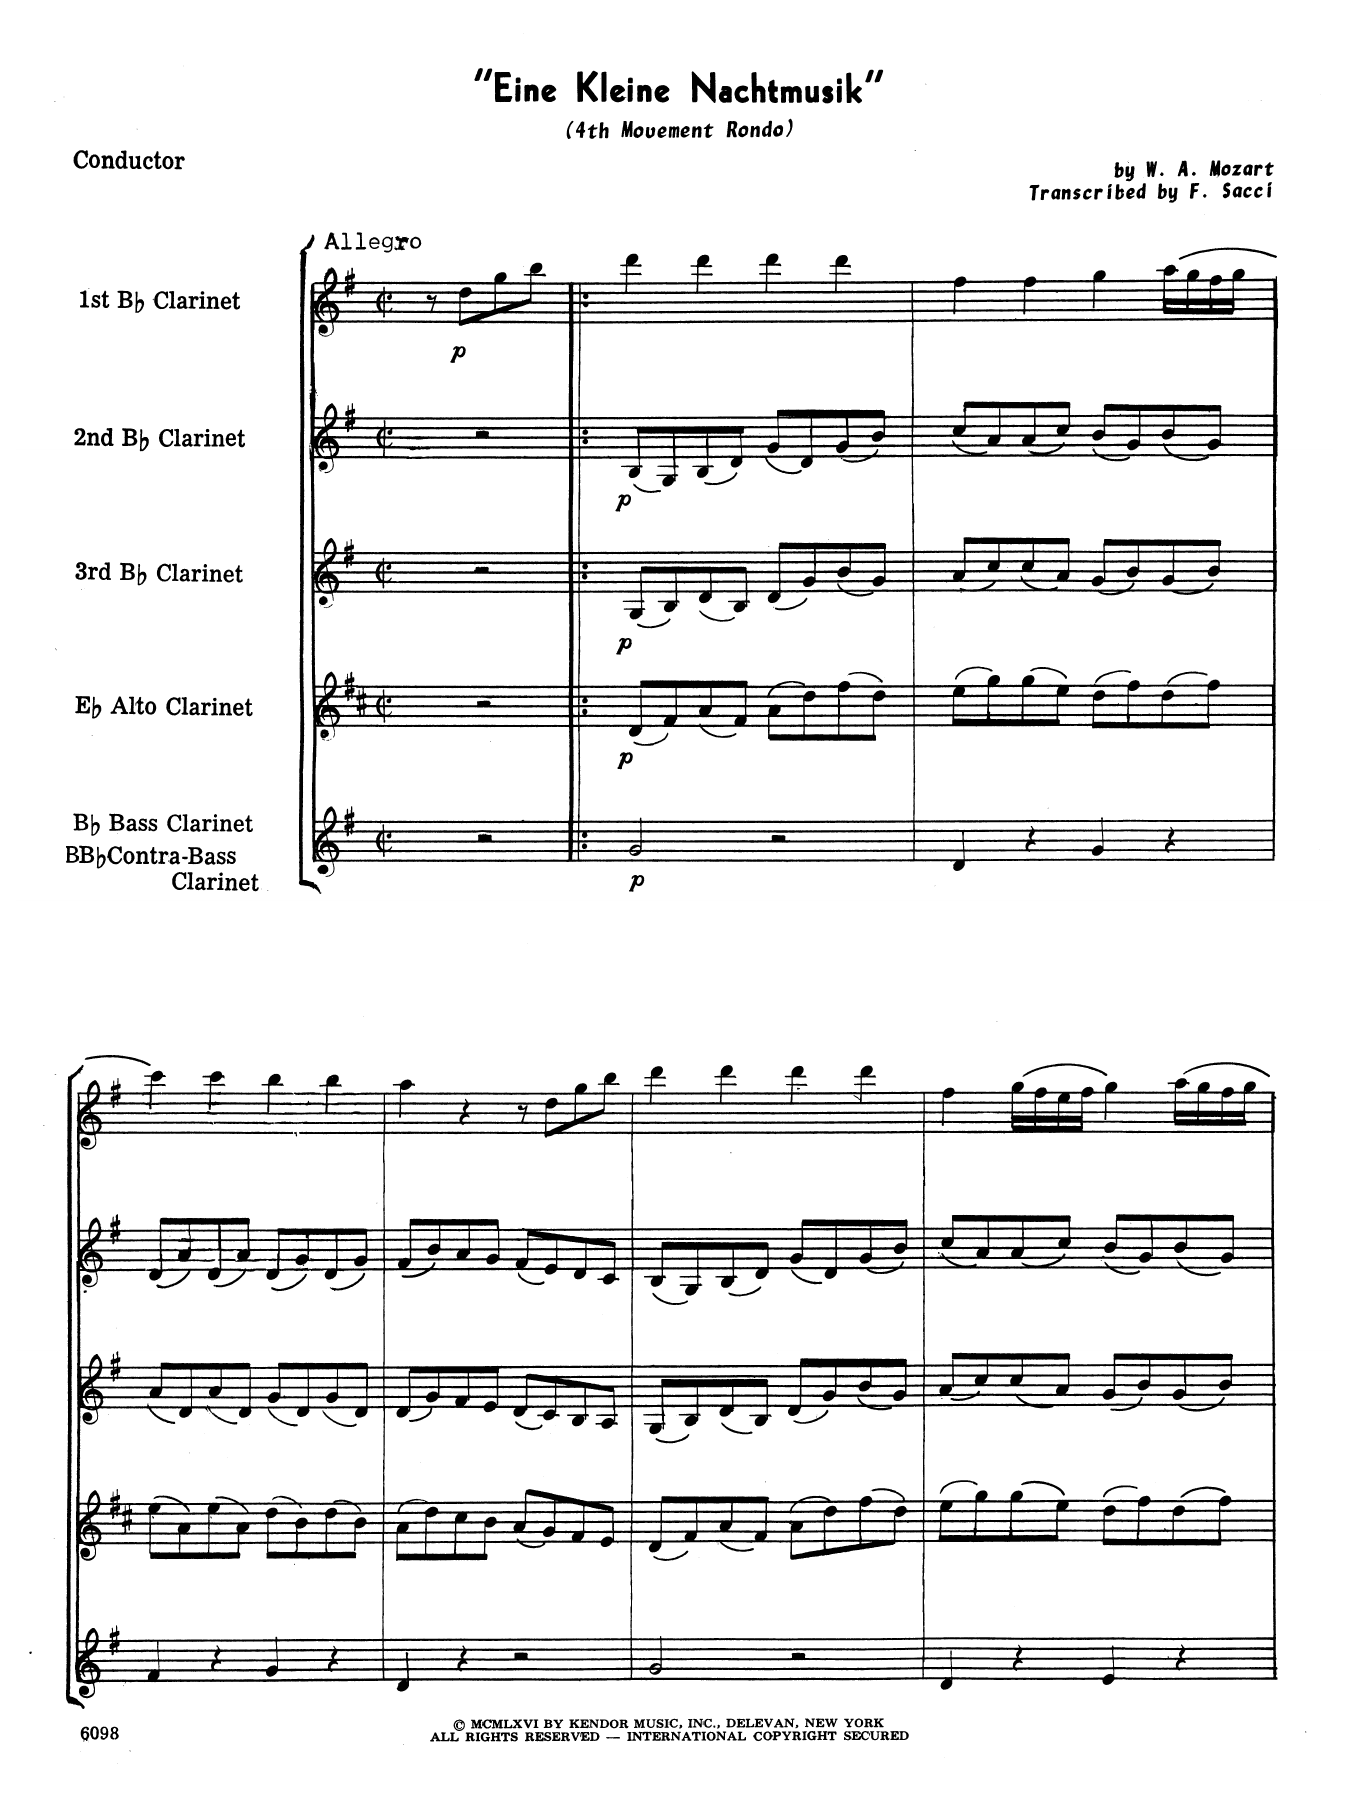 Download Wolfgang Mozart Eine Kleine Nachtmusik/Rondo (Mvt. 4) ( Sheet Music